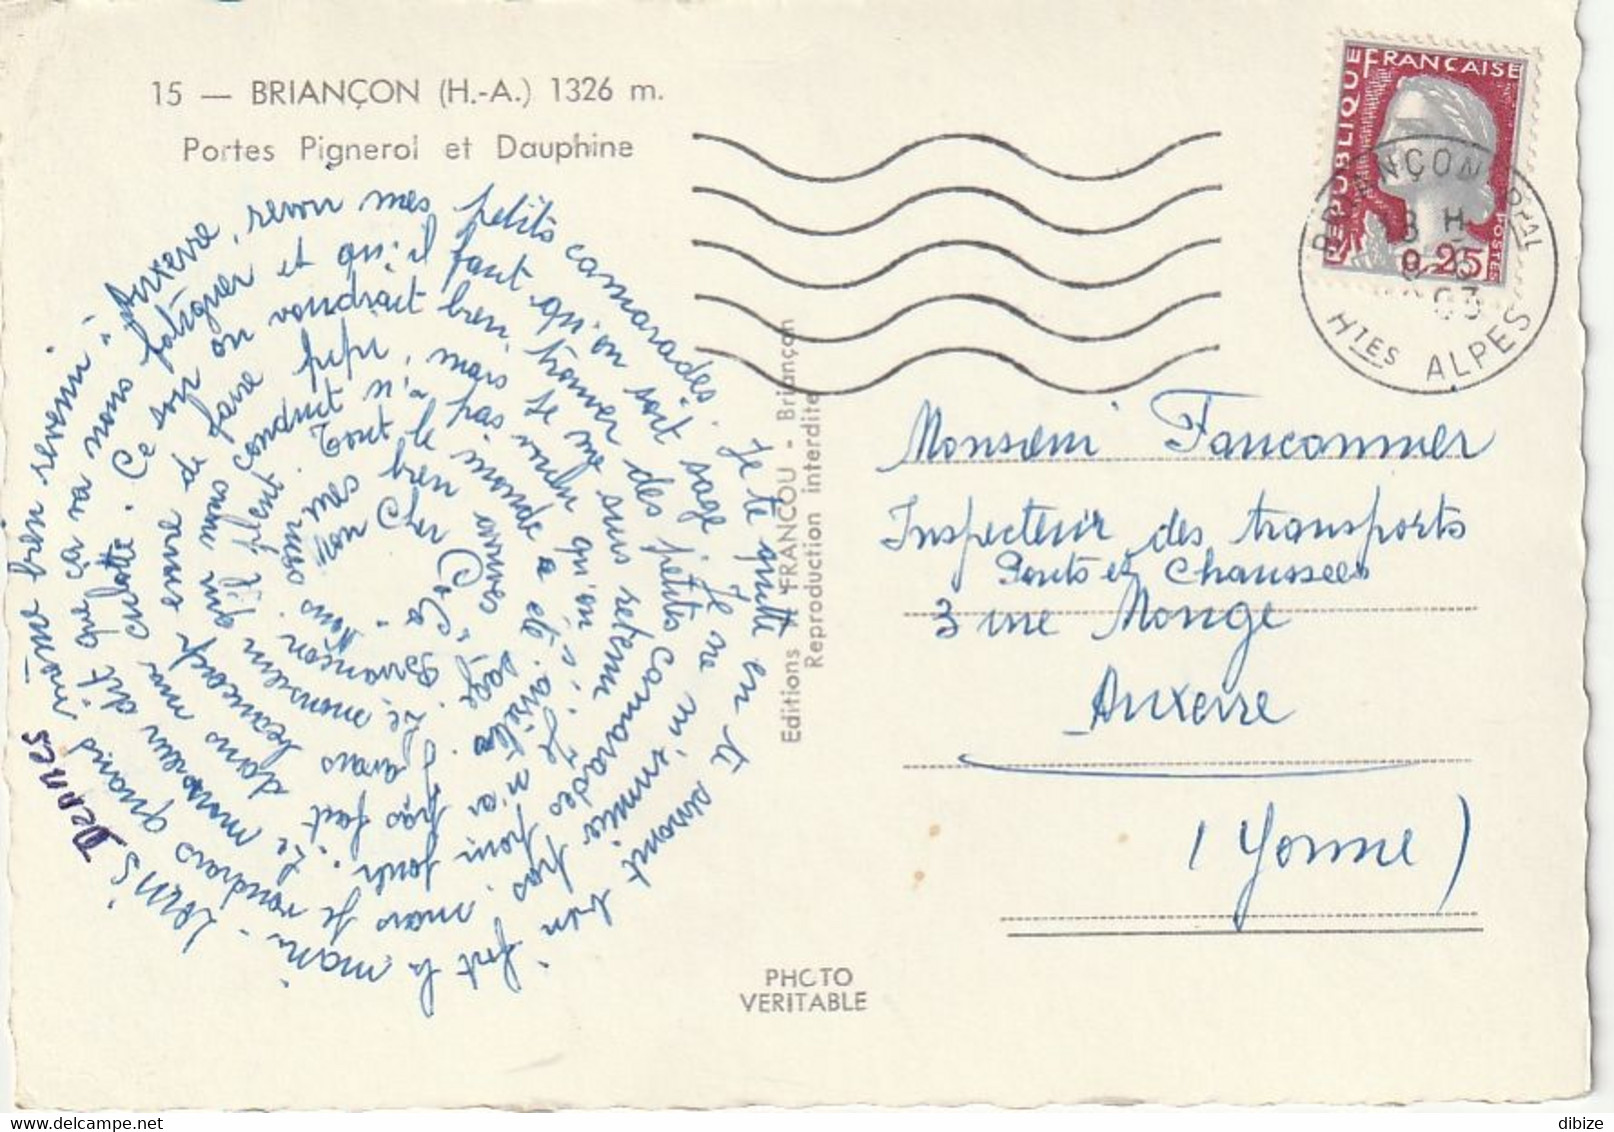 Carte Postale. France. Briançon. Portes Pigneral Et Dauphine. Photo Véritable. Circulé. Timbre. Cachet Postal 1963. - Monuments